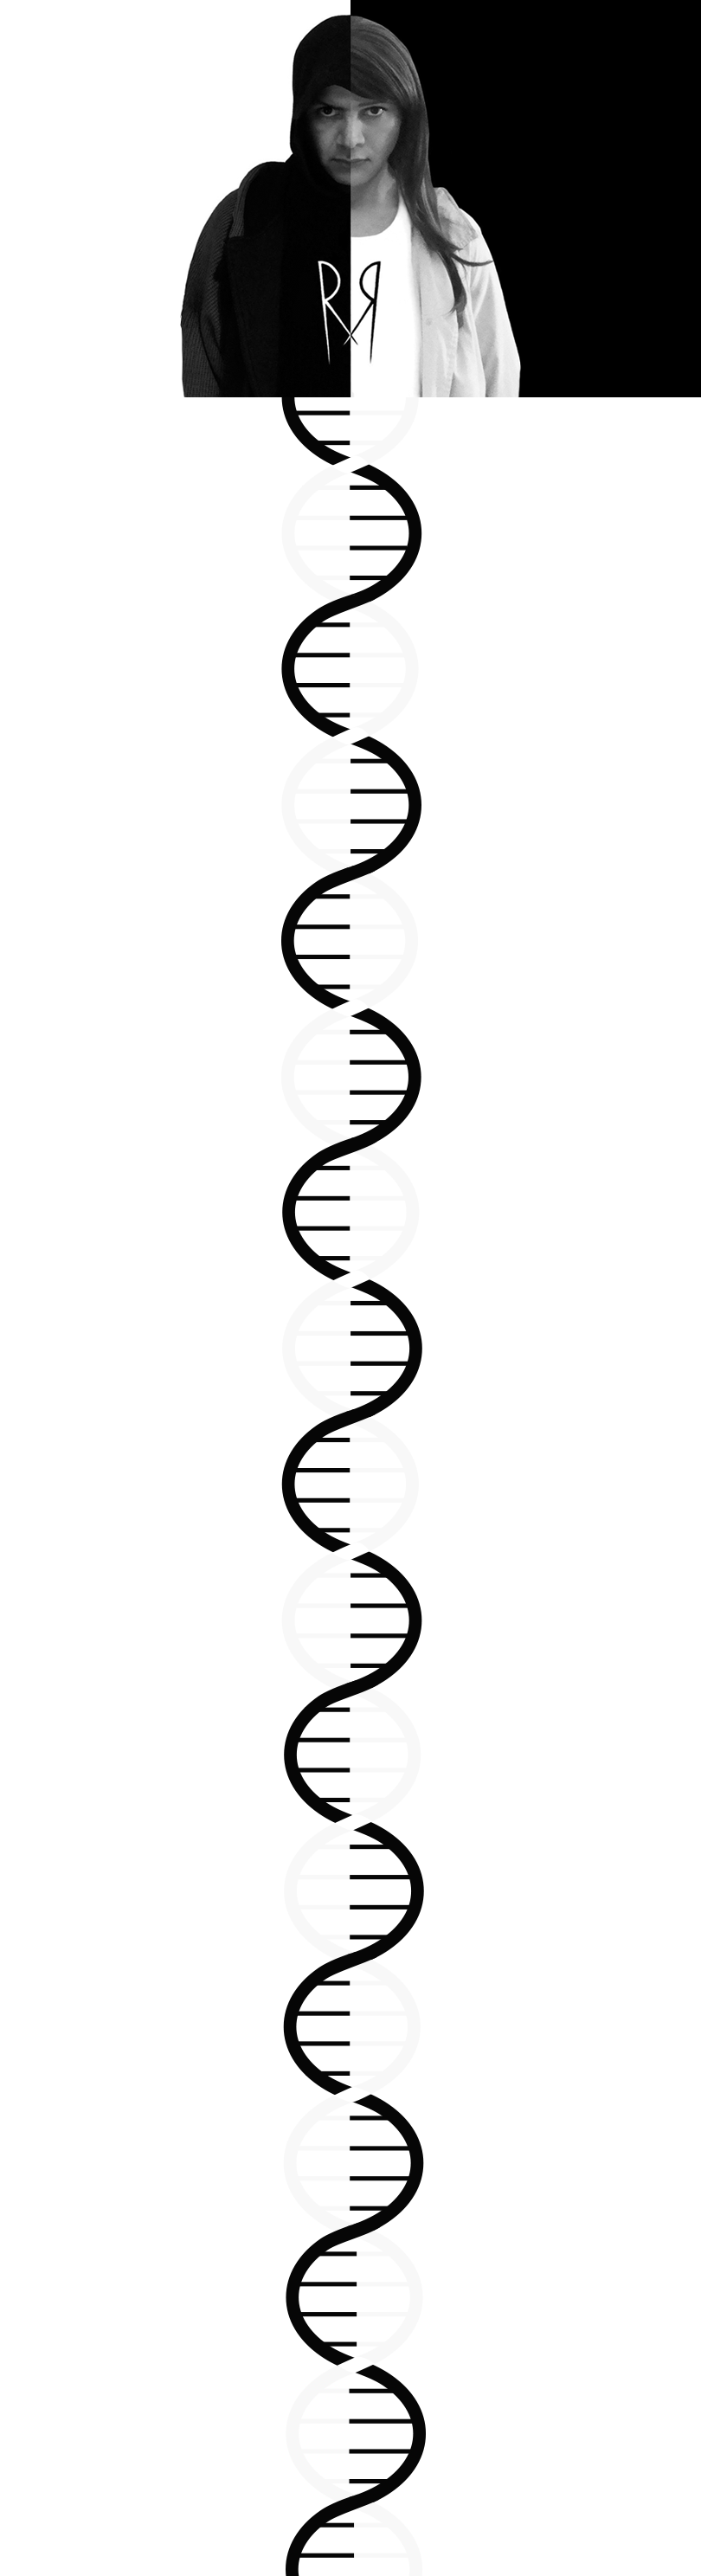 MendTorr DNA